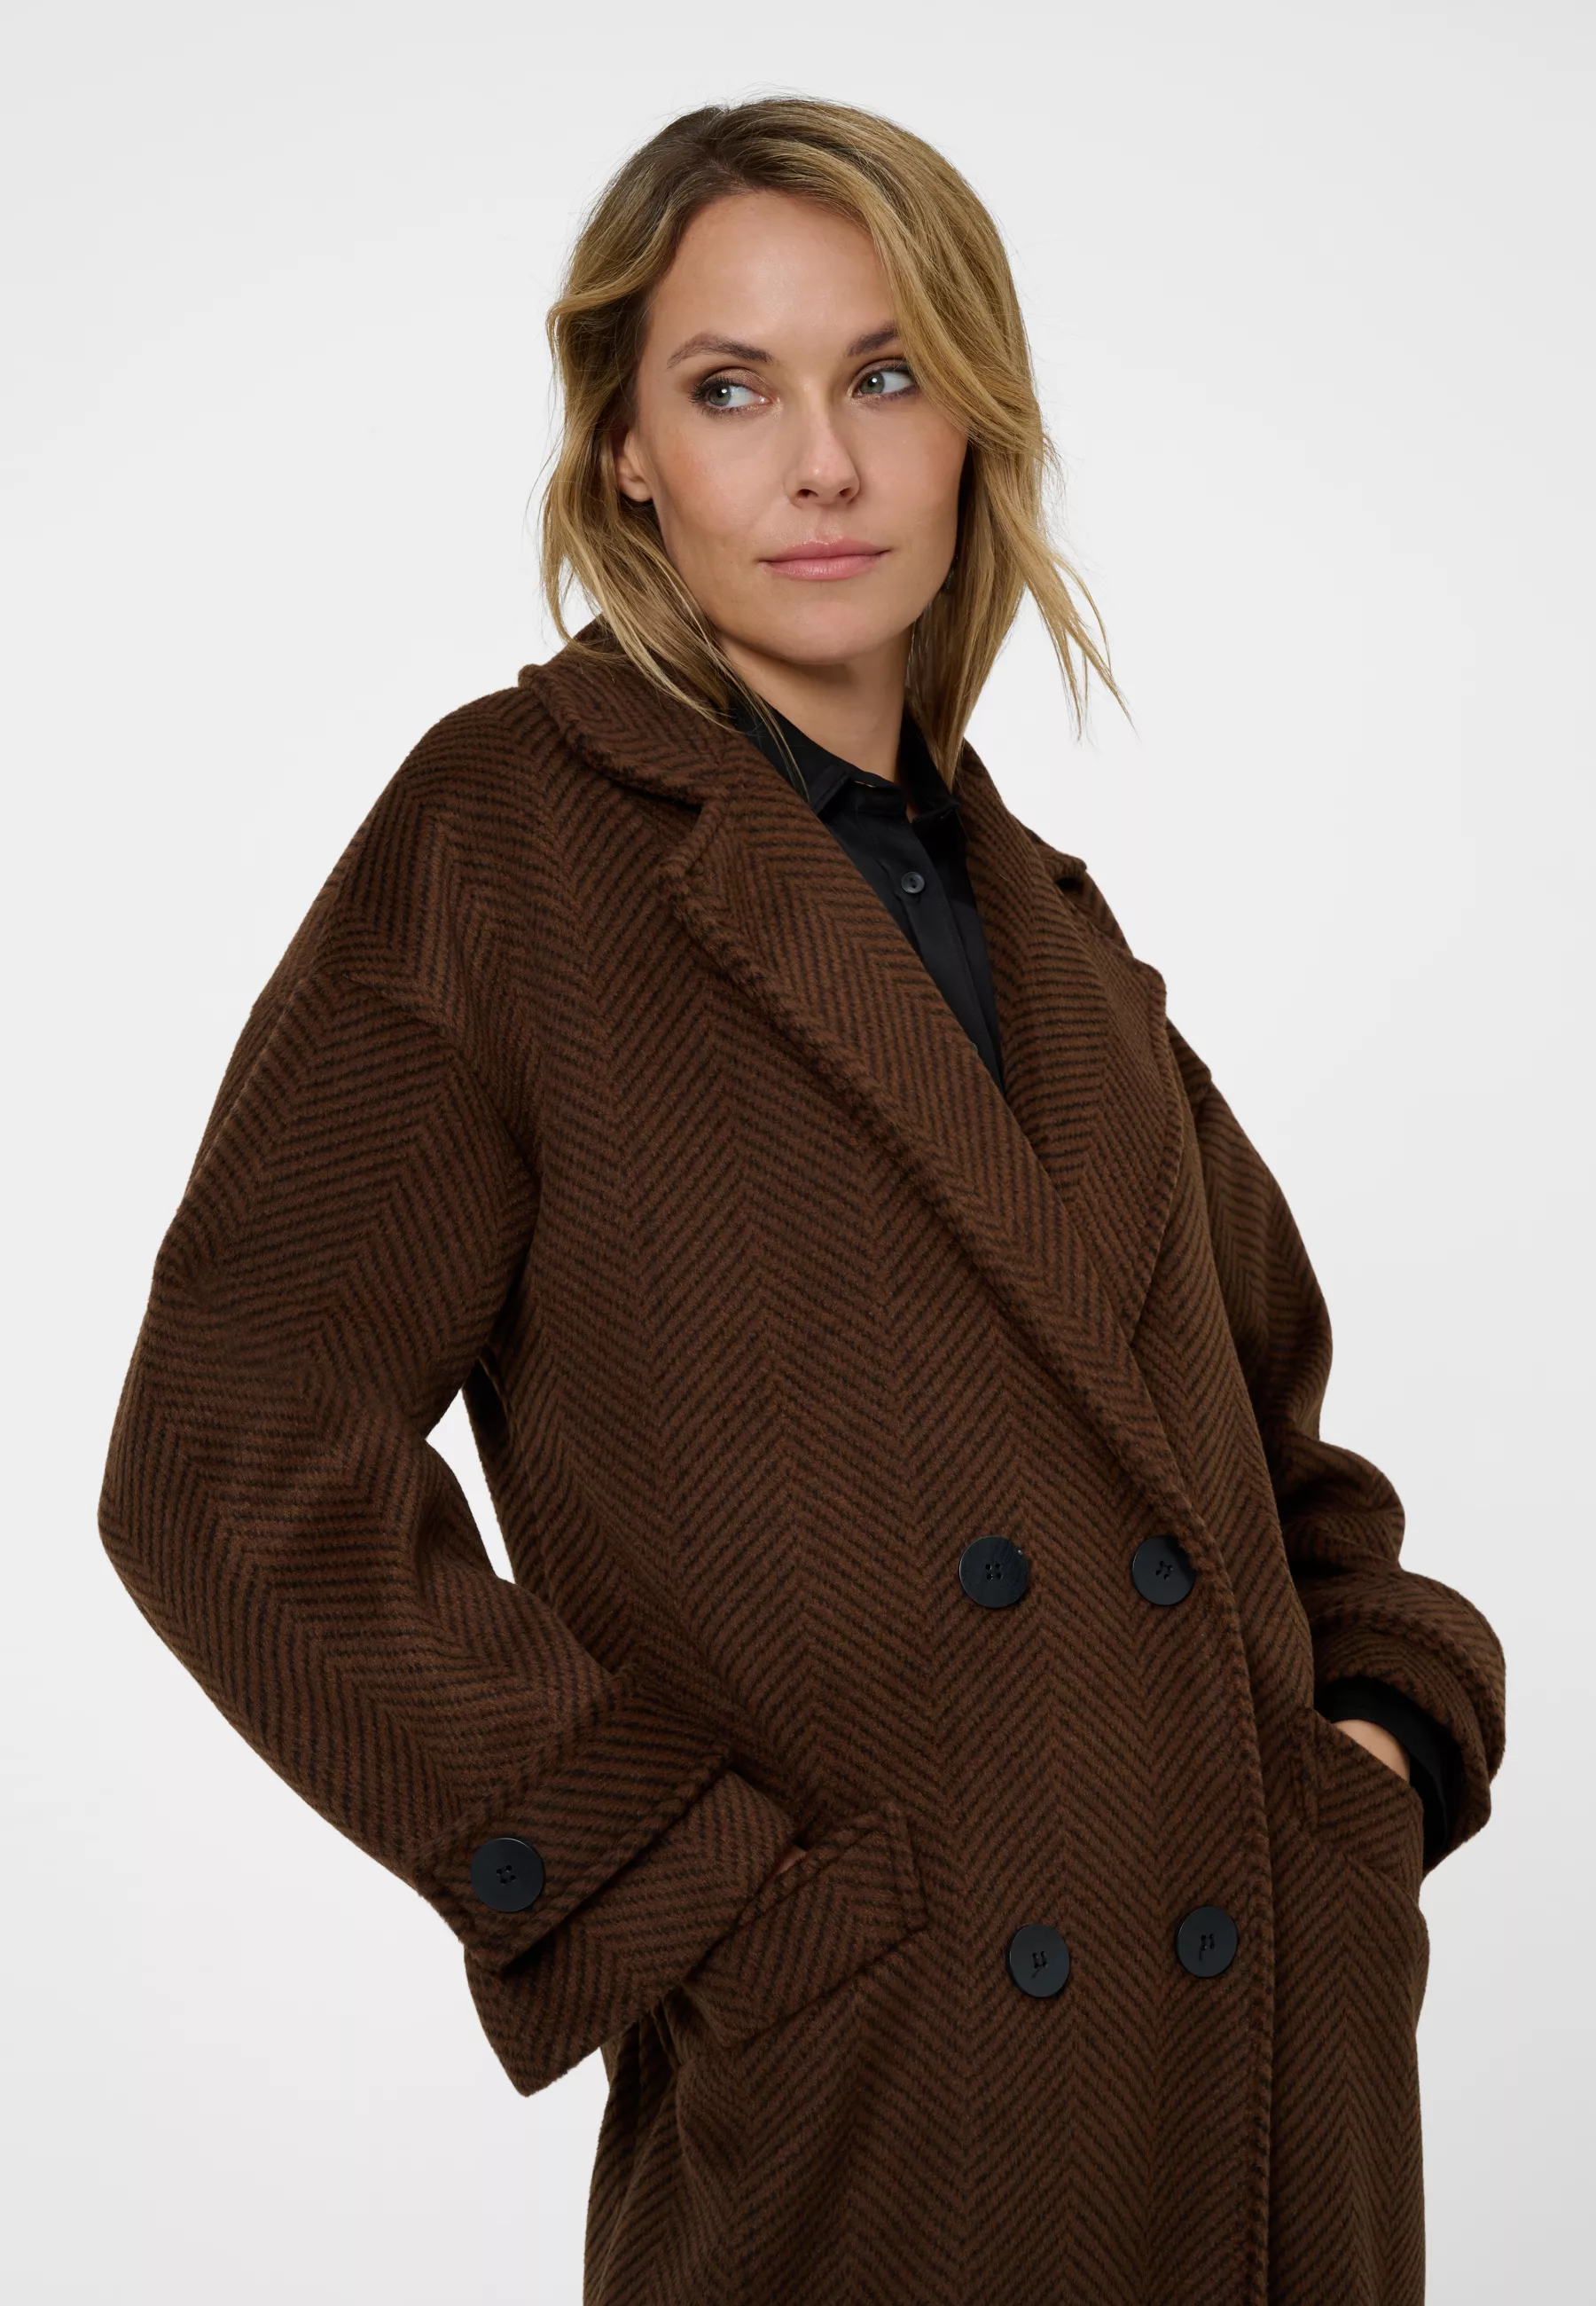 Damen Textil Mantel Franca in Braun gestreift von Ricano, Detailansicht am Model